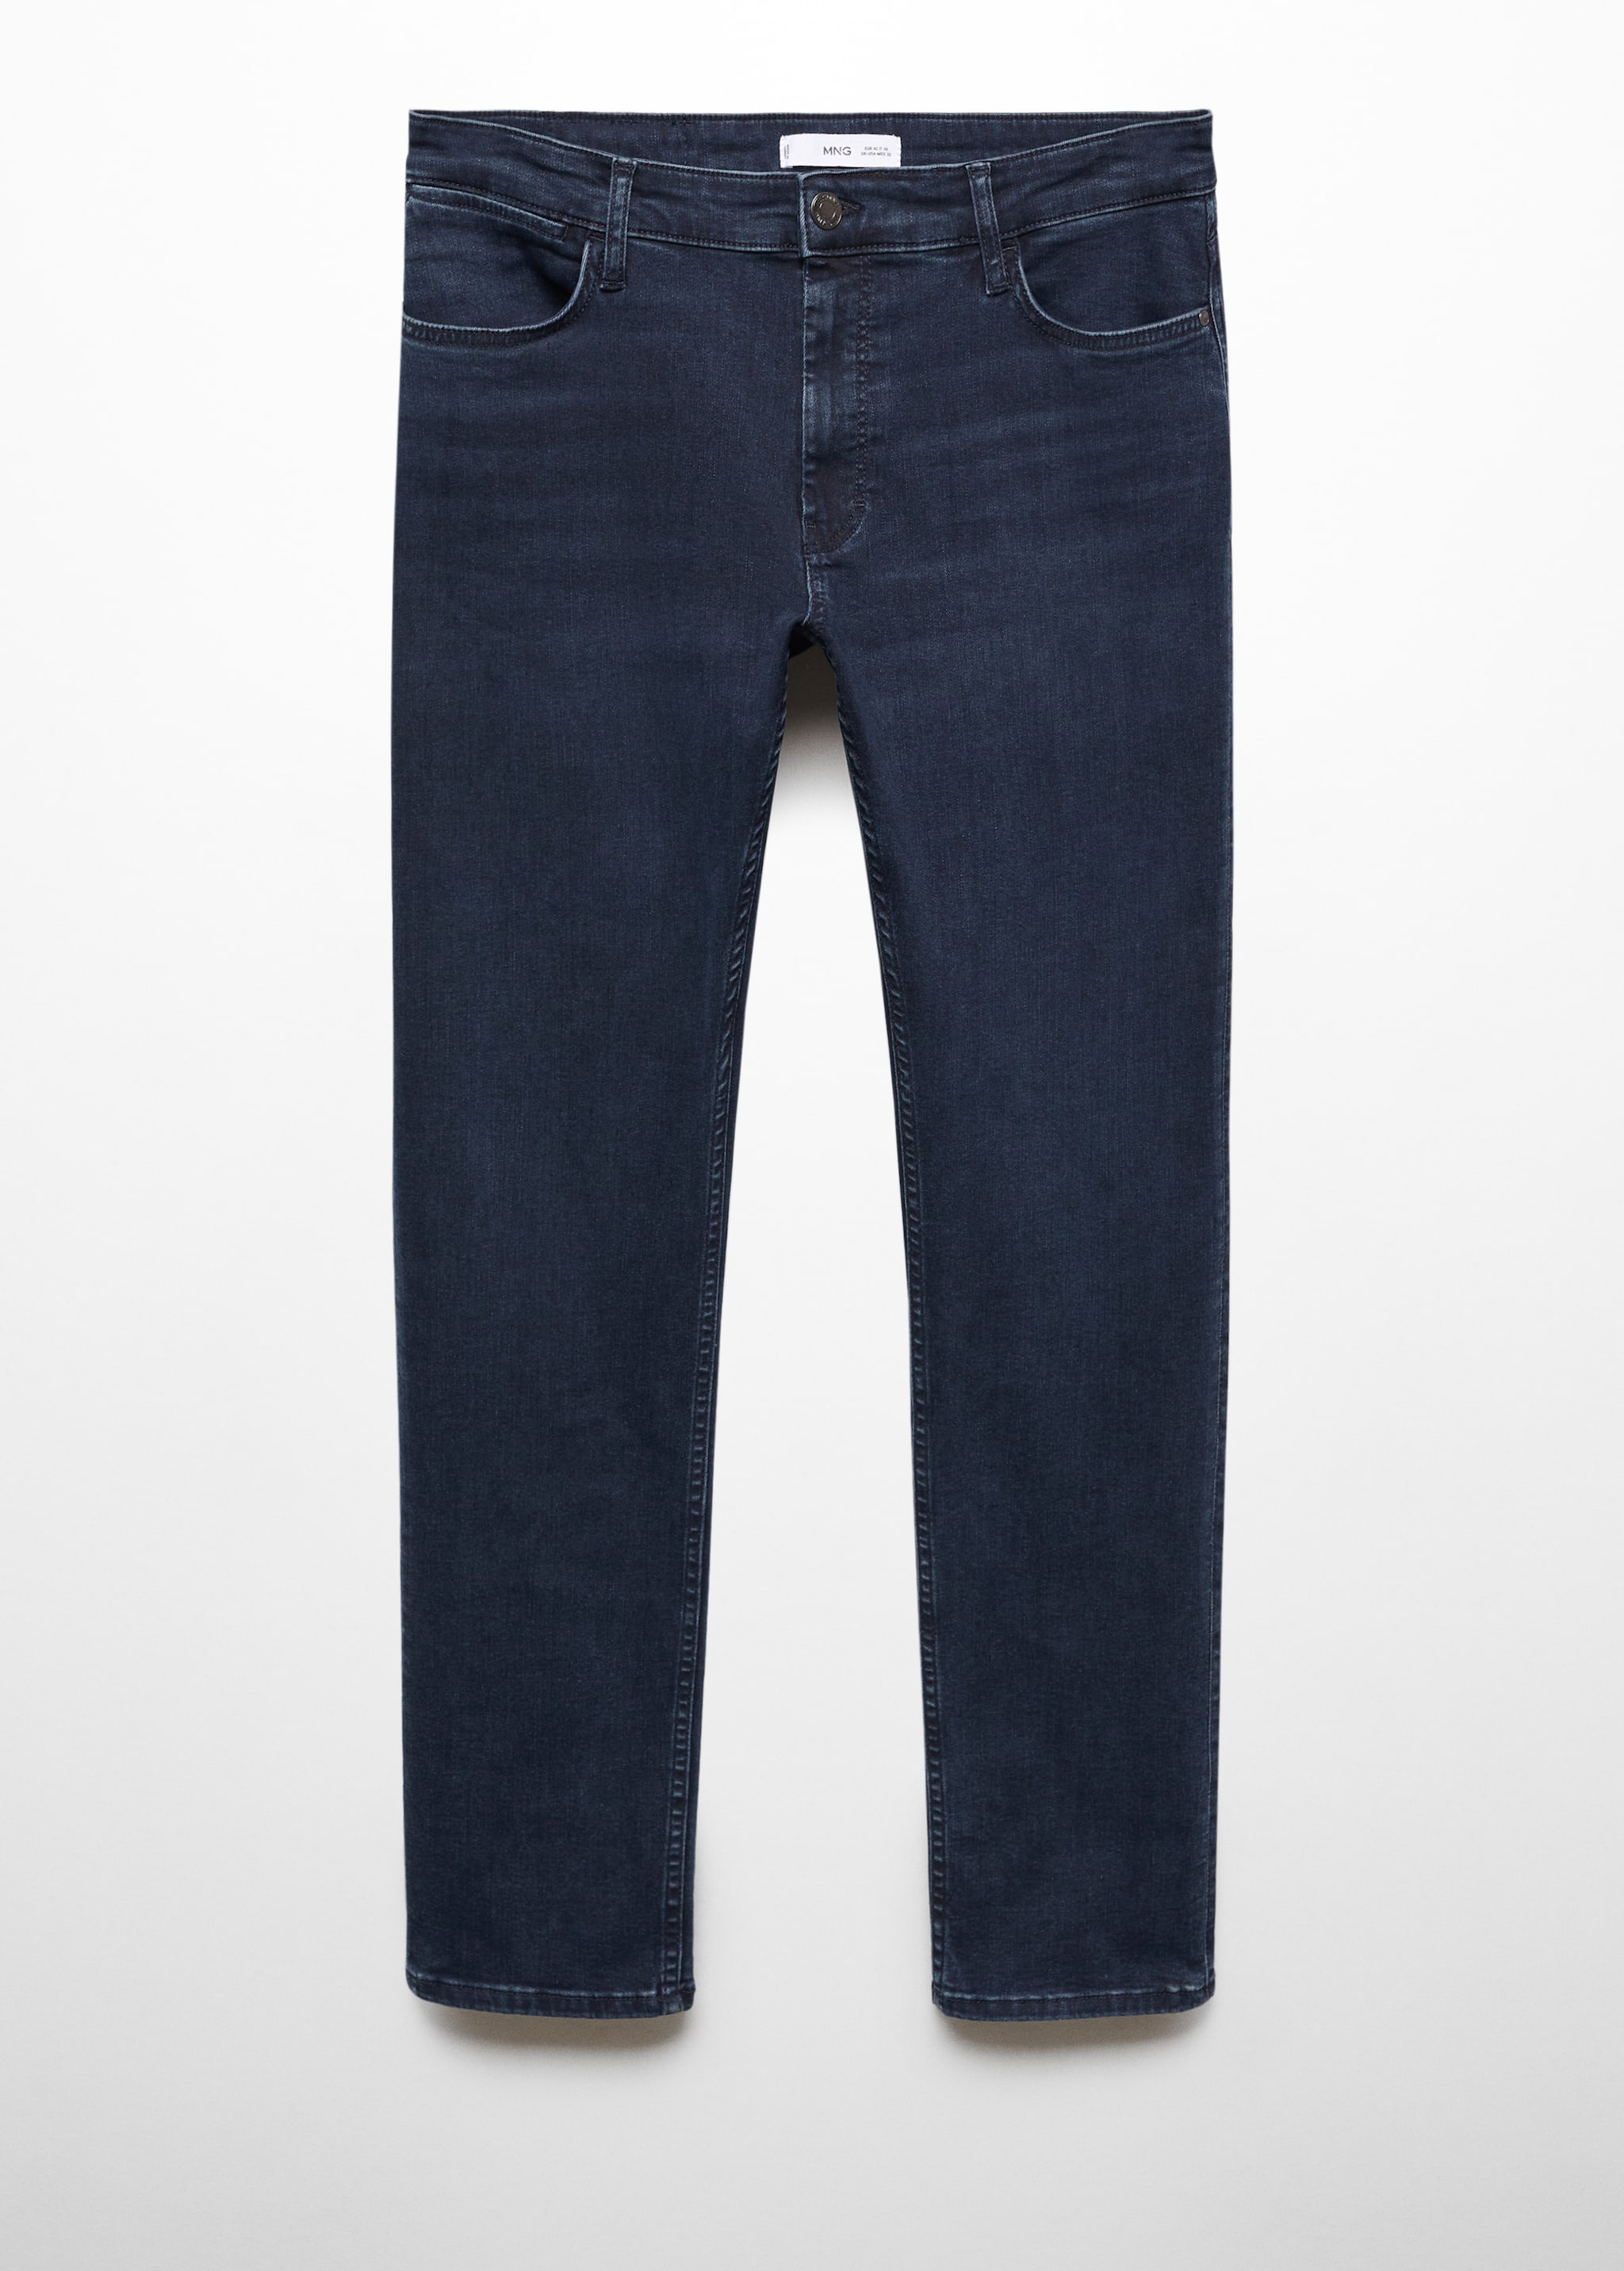 Jeans Patrick slim fit Ultra Soft Touch - Artigo sem modelo